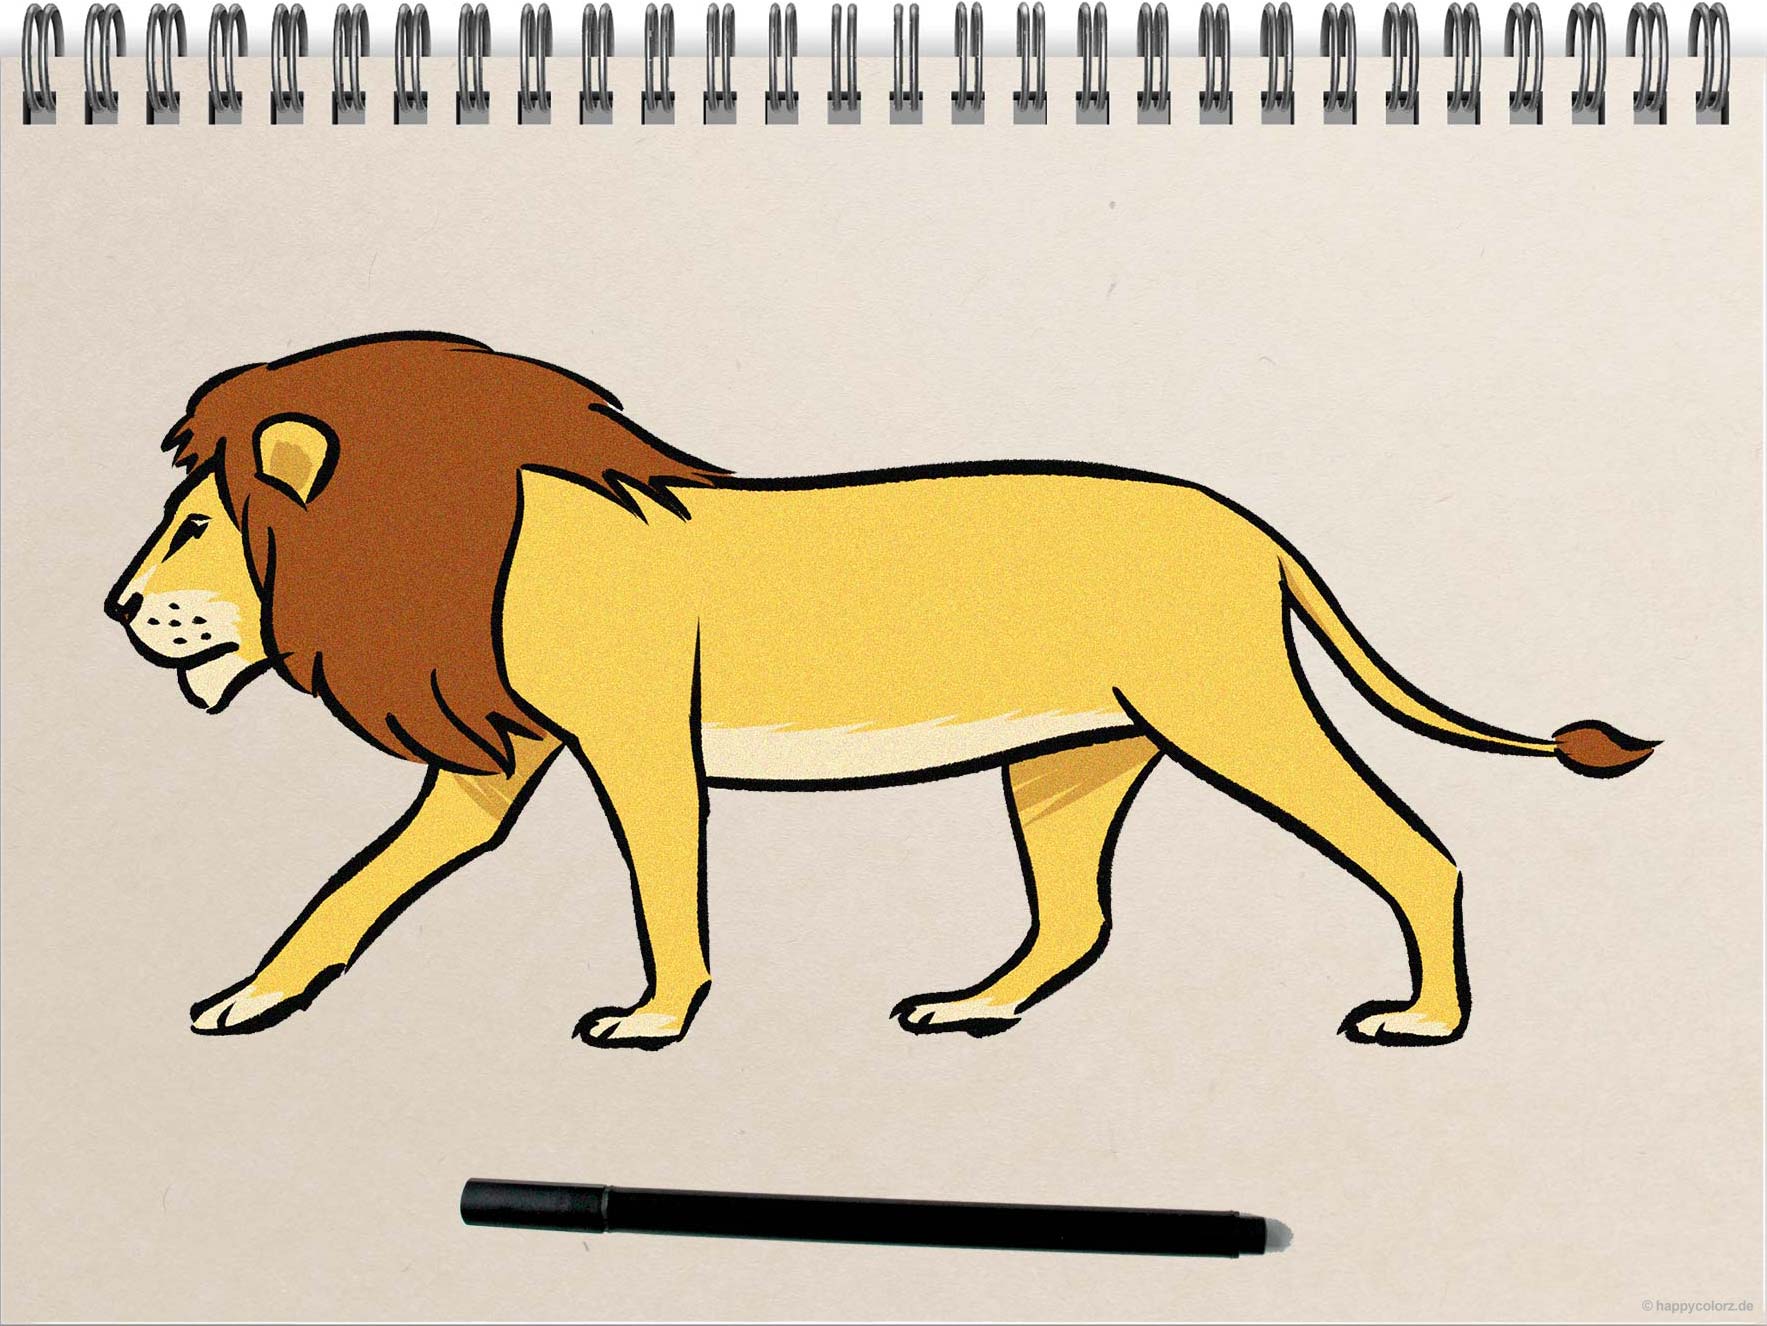 Löwe zeichnen - Schritt-für-Schritt Anleitung mit Vorlagen